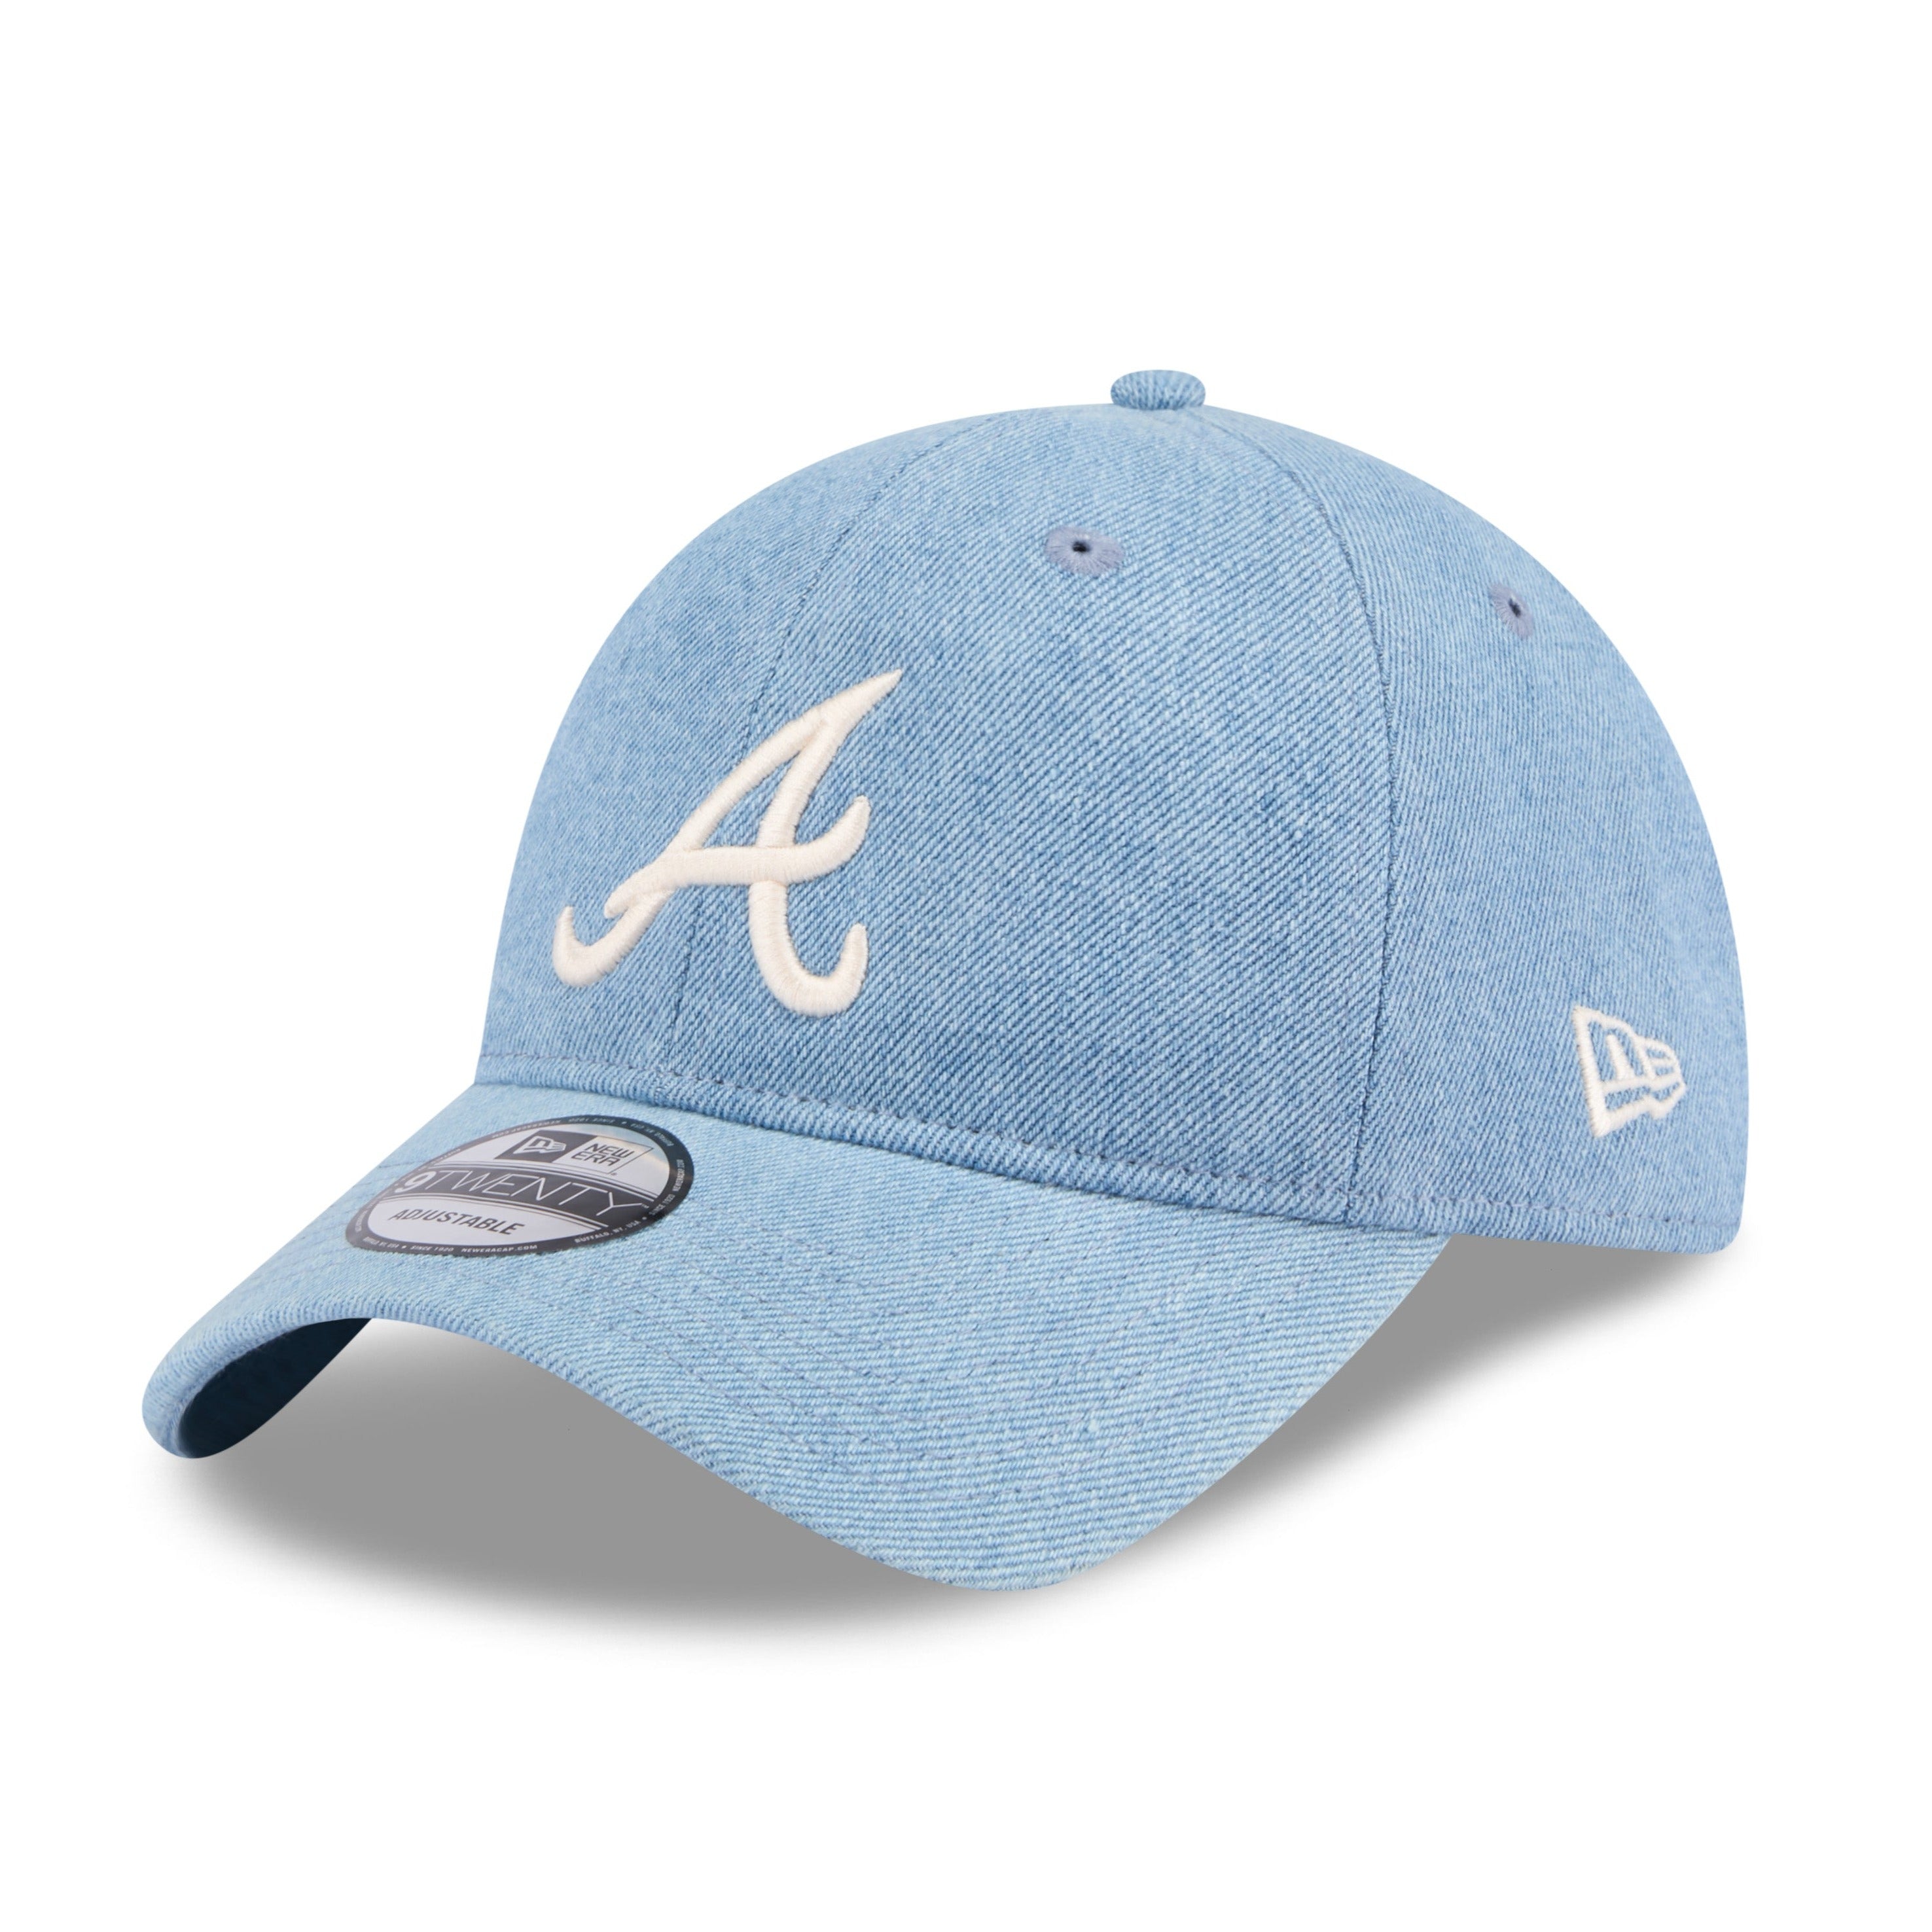 NEW ERA 9TWENTY MLB ATLANTA BRAVES WASHED DENIM BLUE CAP